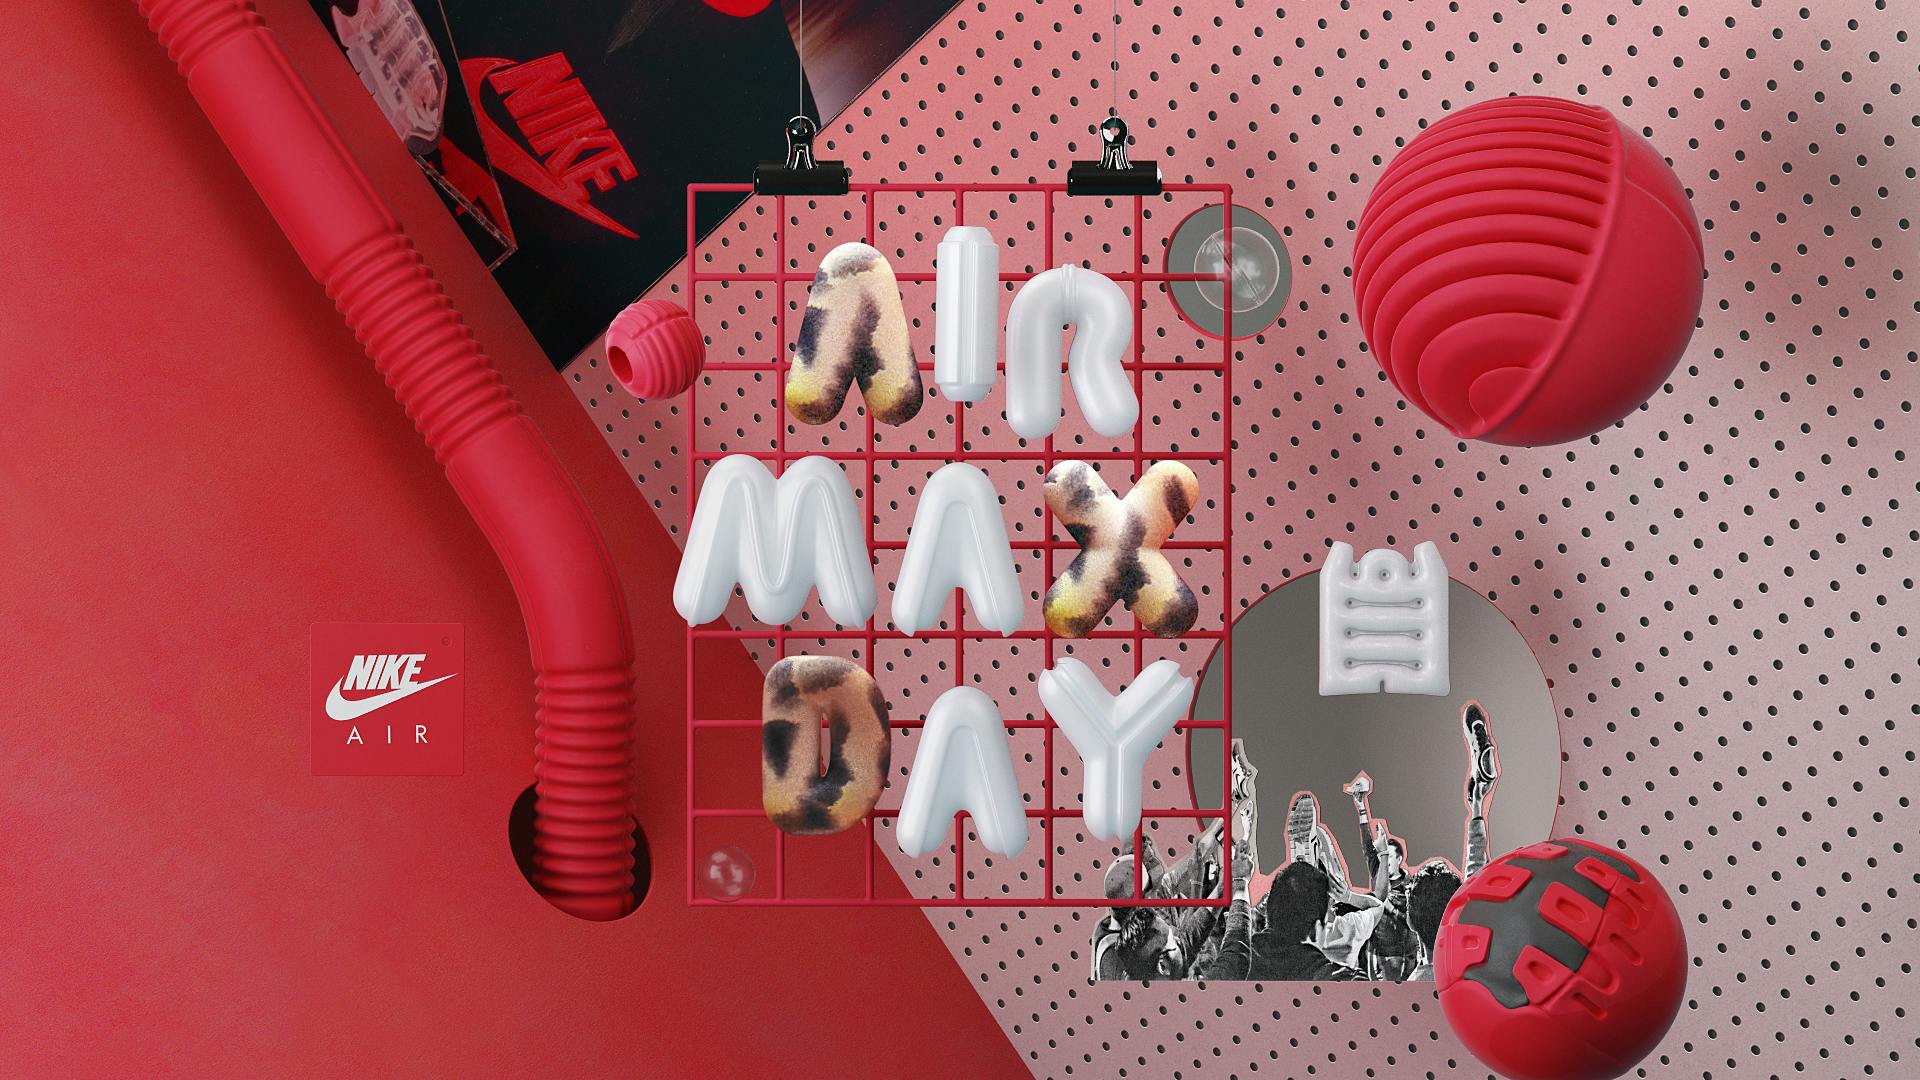 ManvsMachine's colourful campaign Nike Max Day